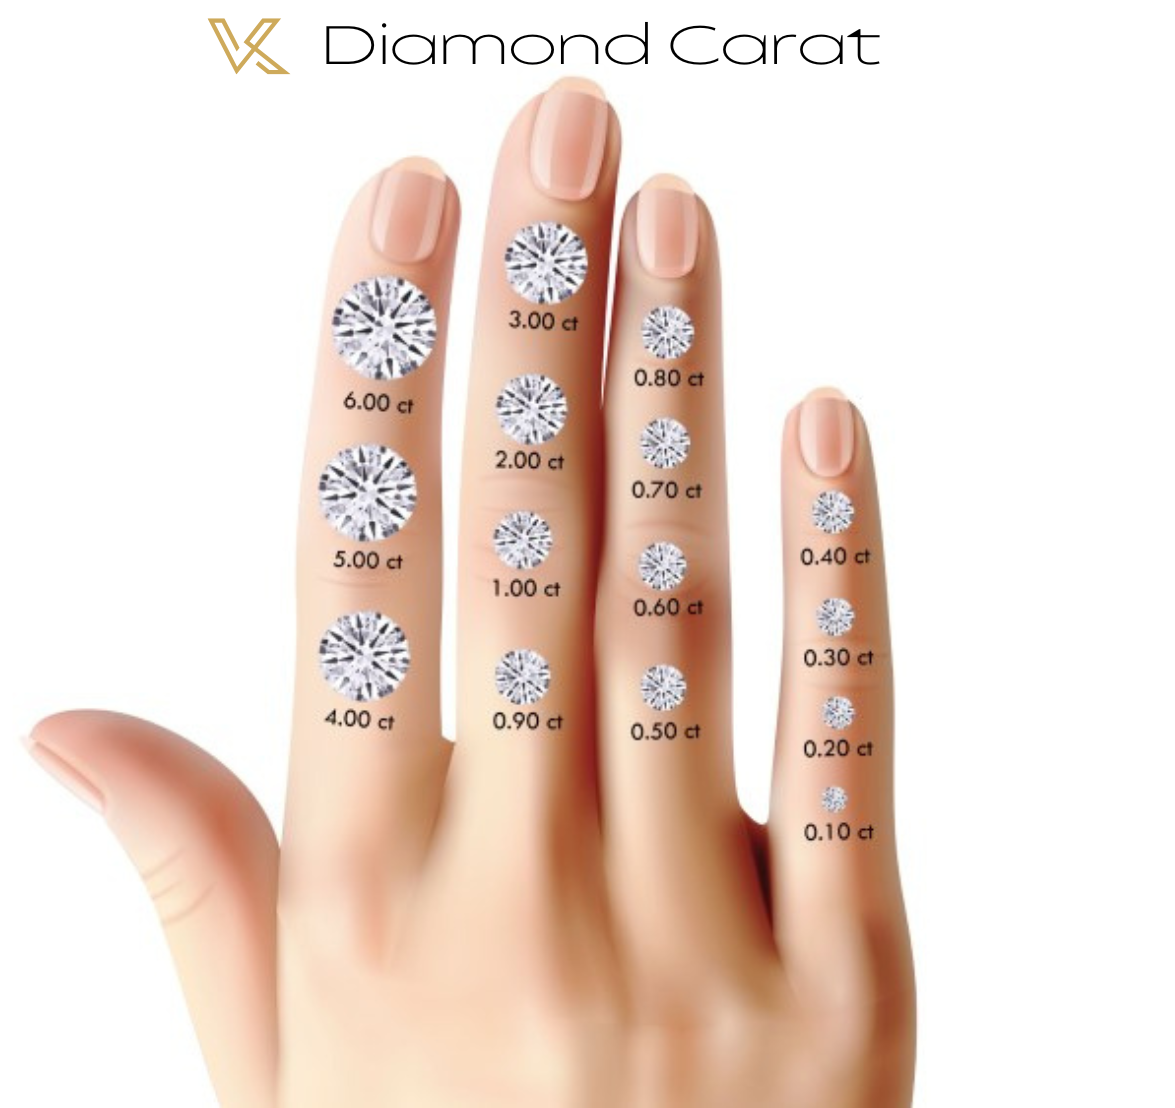 Kaufen Sie einen losen Diamanten von 1,01 Karat. D VVS2 – IGI-zertifizierter, im Labor gezüchteter Diamant